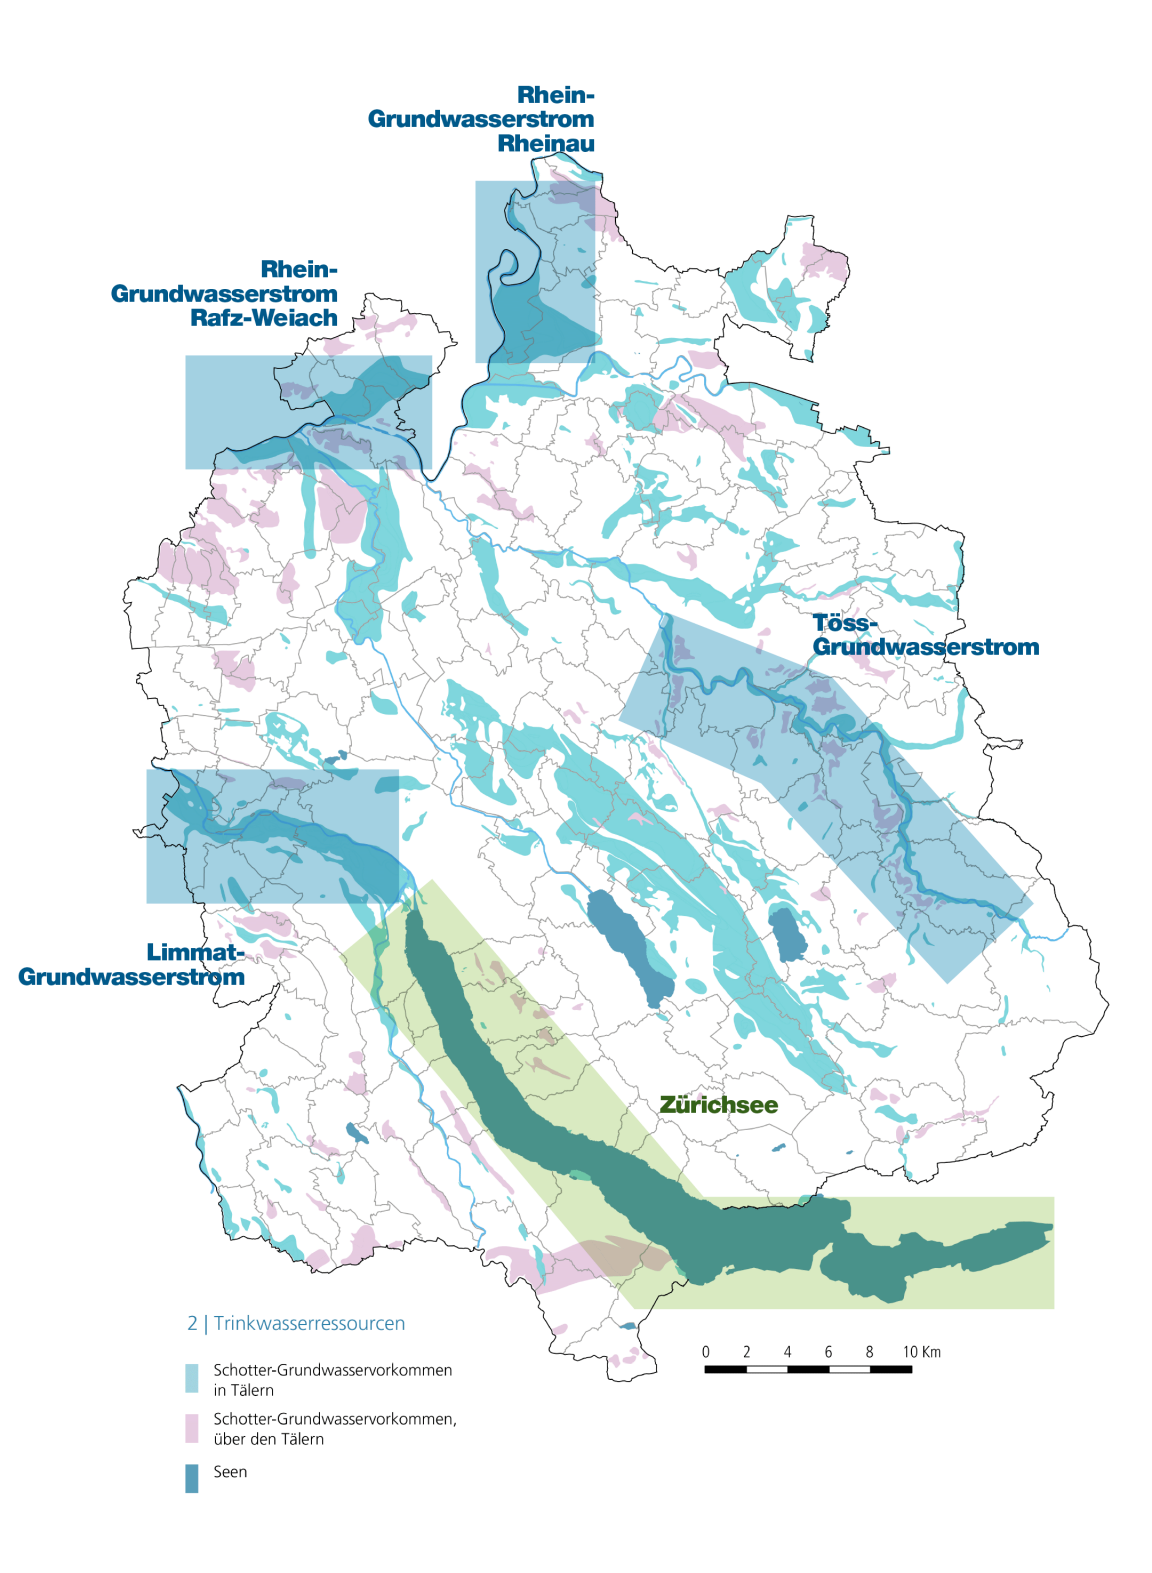 Eine Karte des Kantons Zürich zeigt die Lage der wichtigsten Trinkwasserressourcen: die Grundwasserressourcen entlang des Rheins, der Limmat und der Töss sowie den Zürichsee.